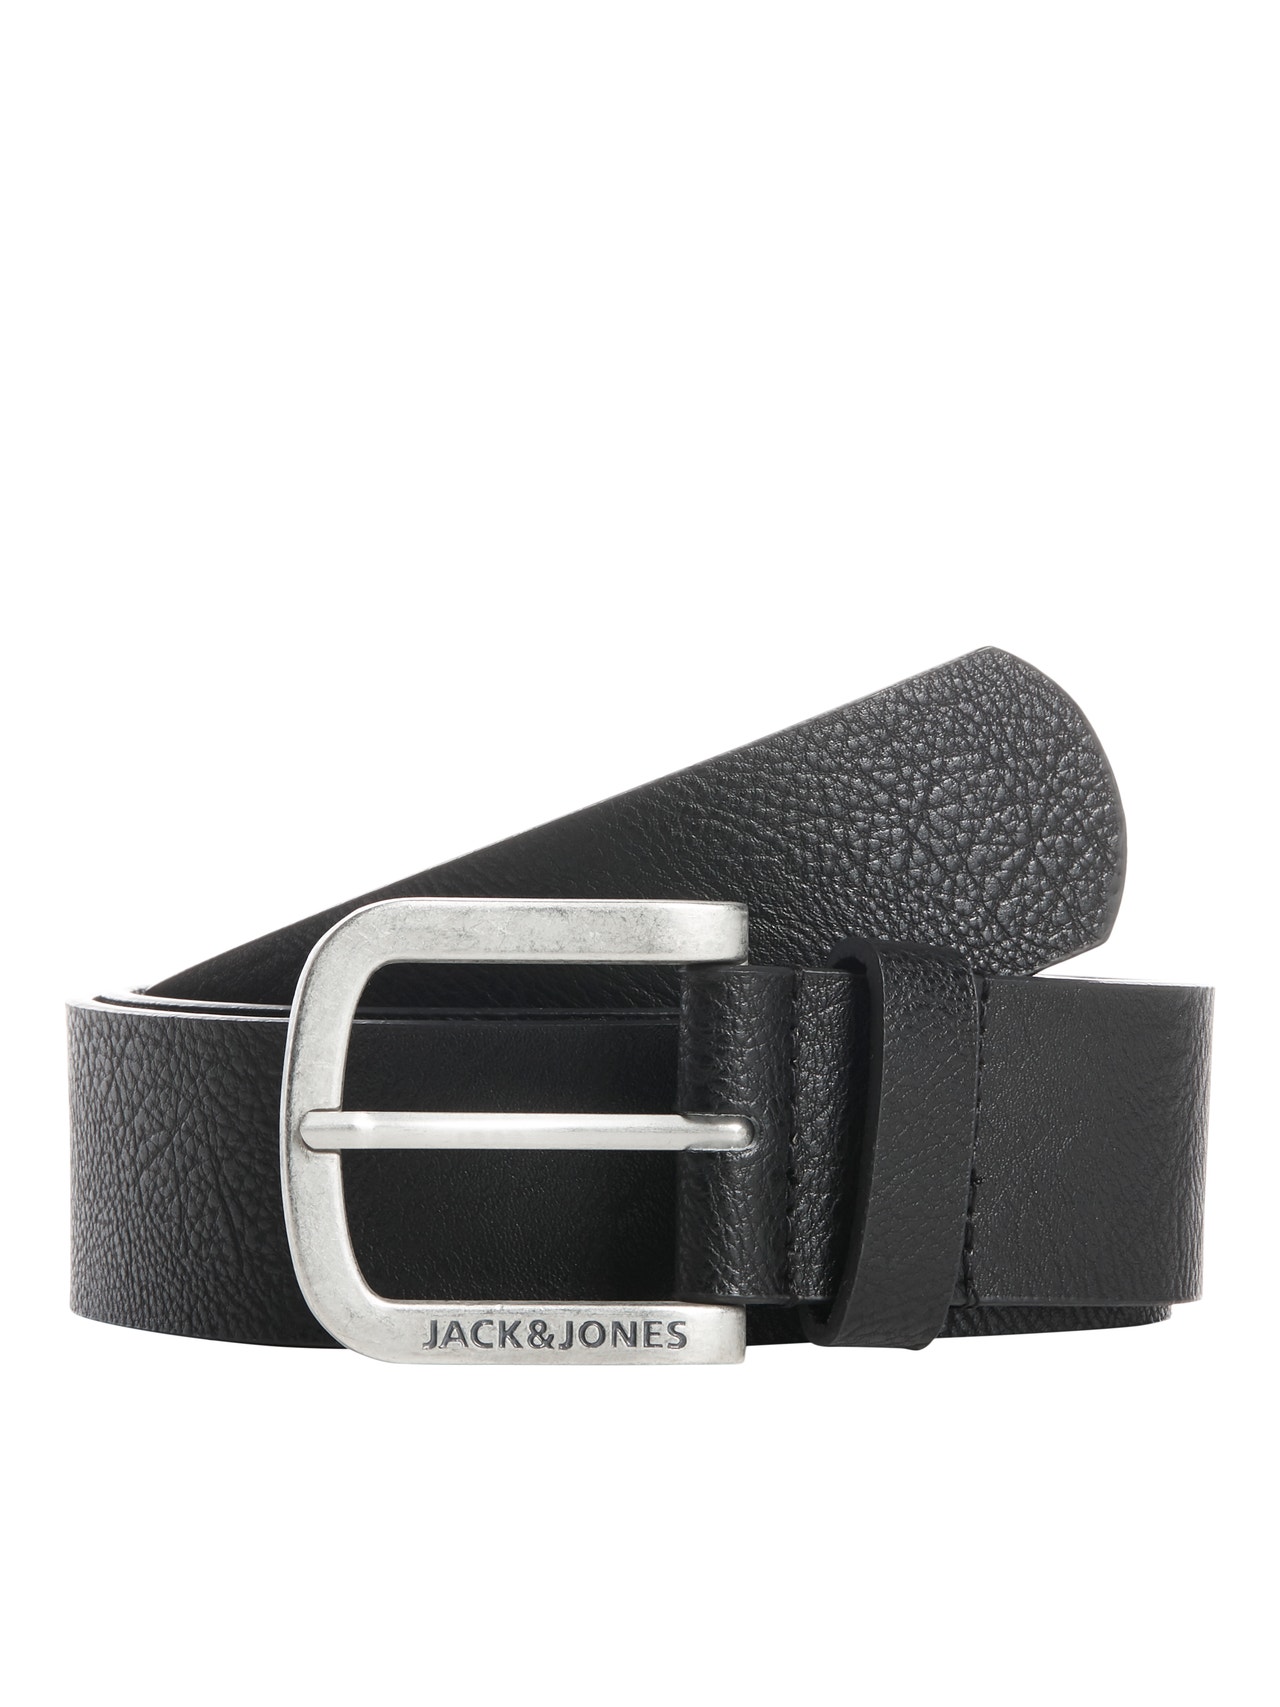 Jack & Jones Cinturón Piel sintética -Black - 12120697